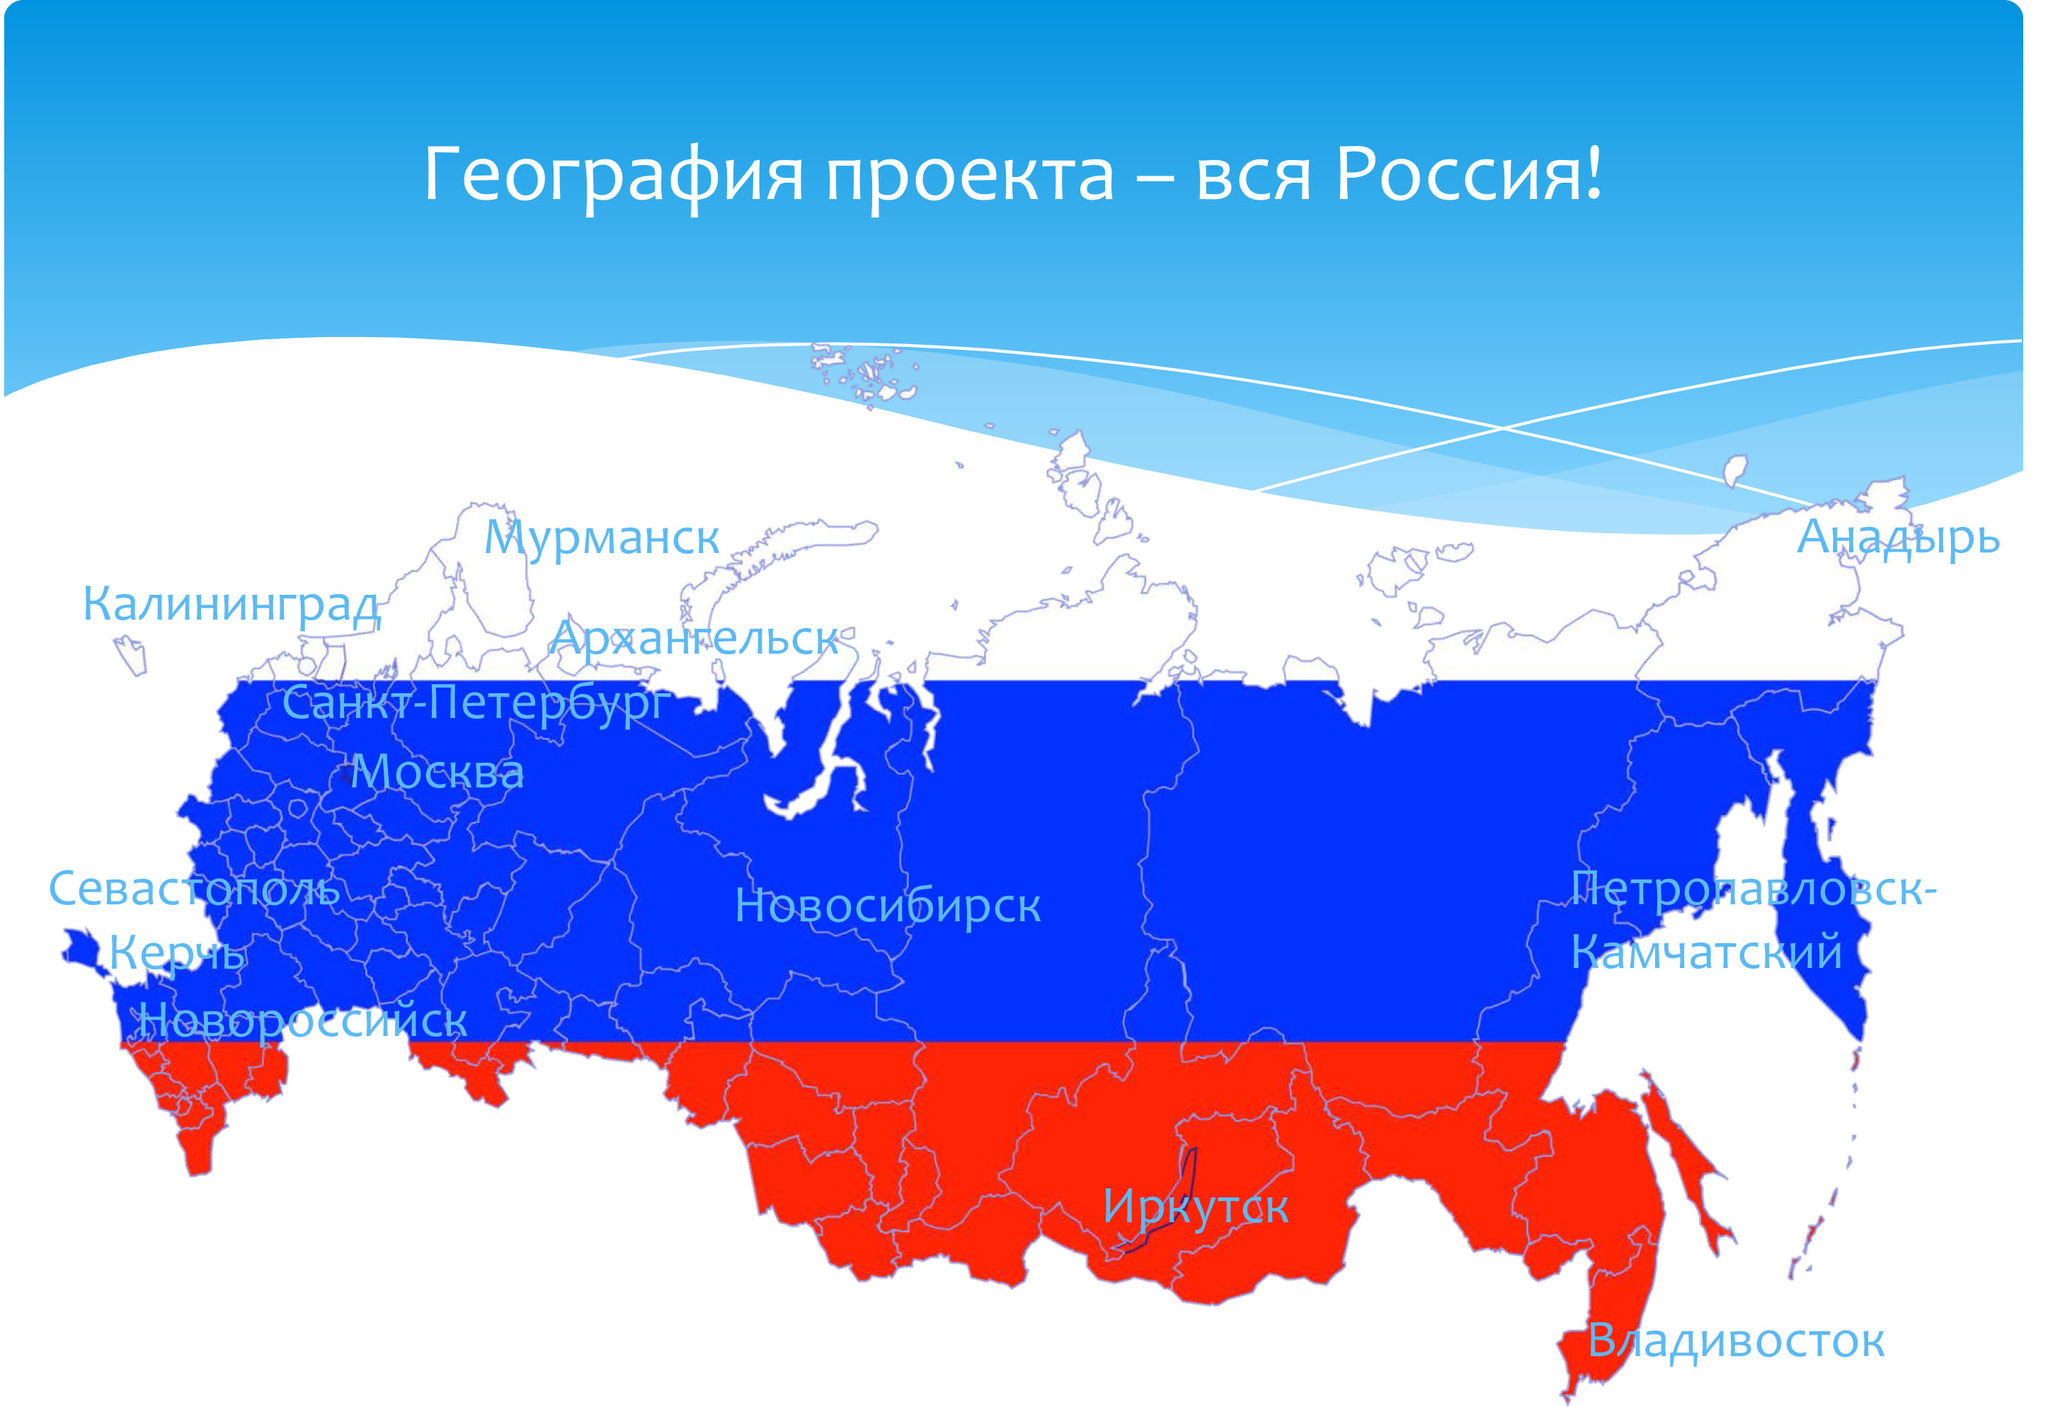 Карта россии санкт петербург